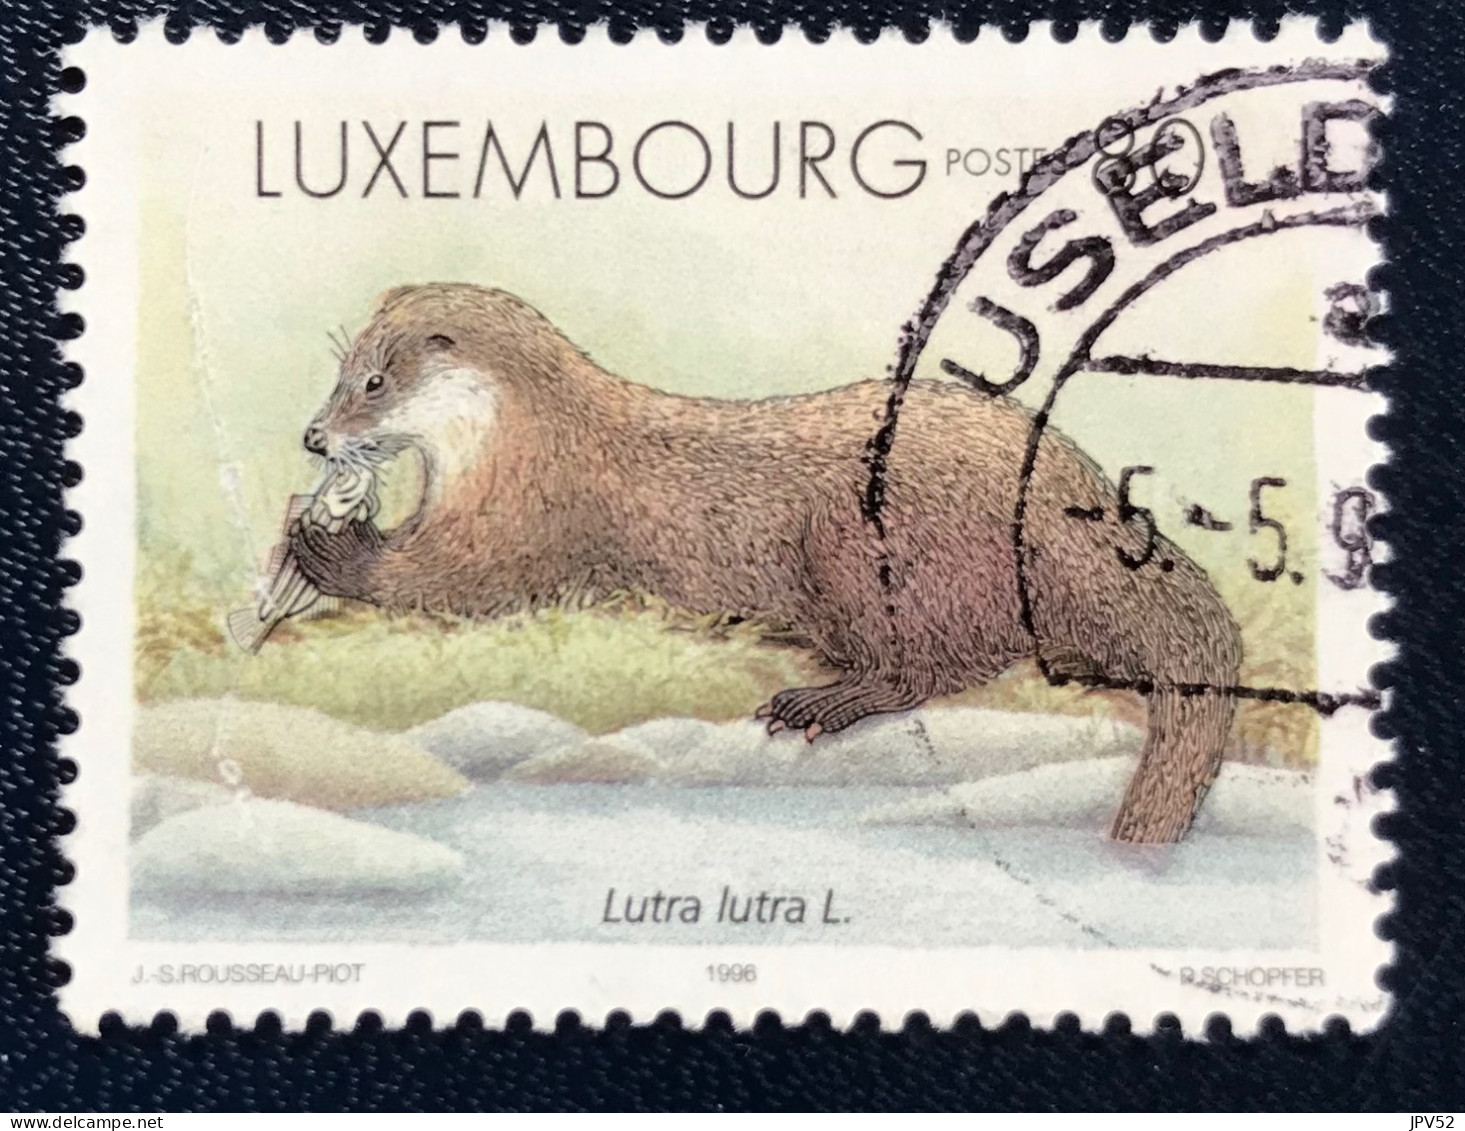 Luxembourg - Luxemburg - C18/32 - 1996 - (°)used - Michel 1402 - Pelsdieren - Gebruikt